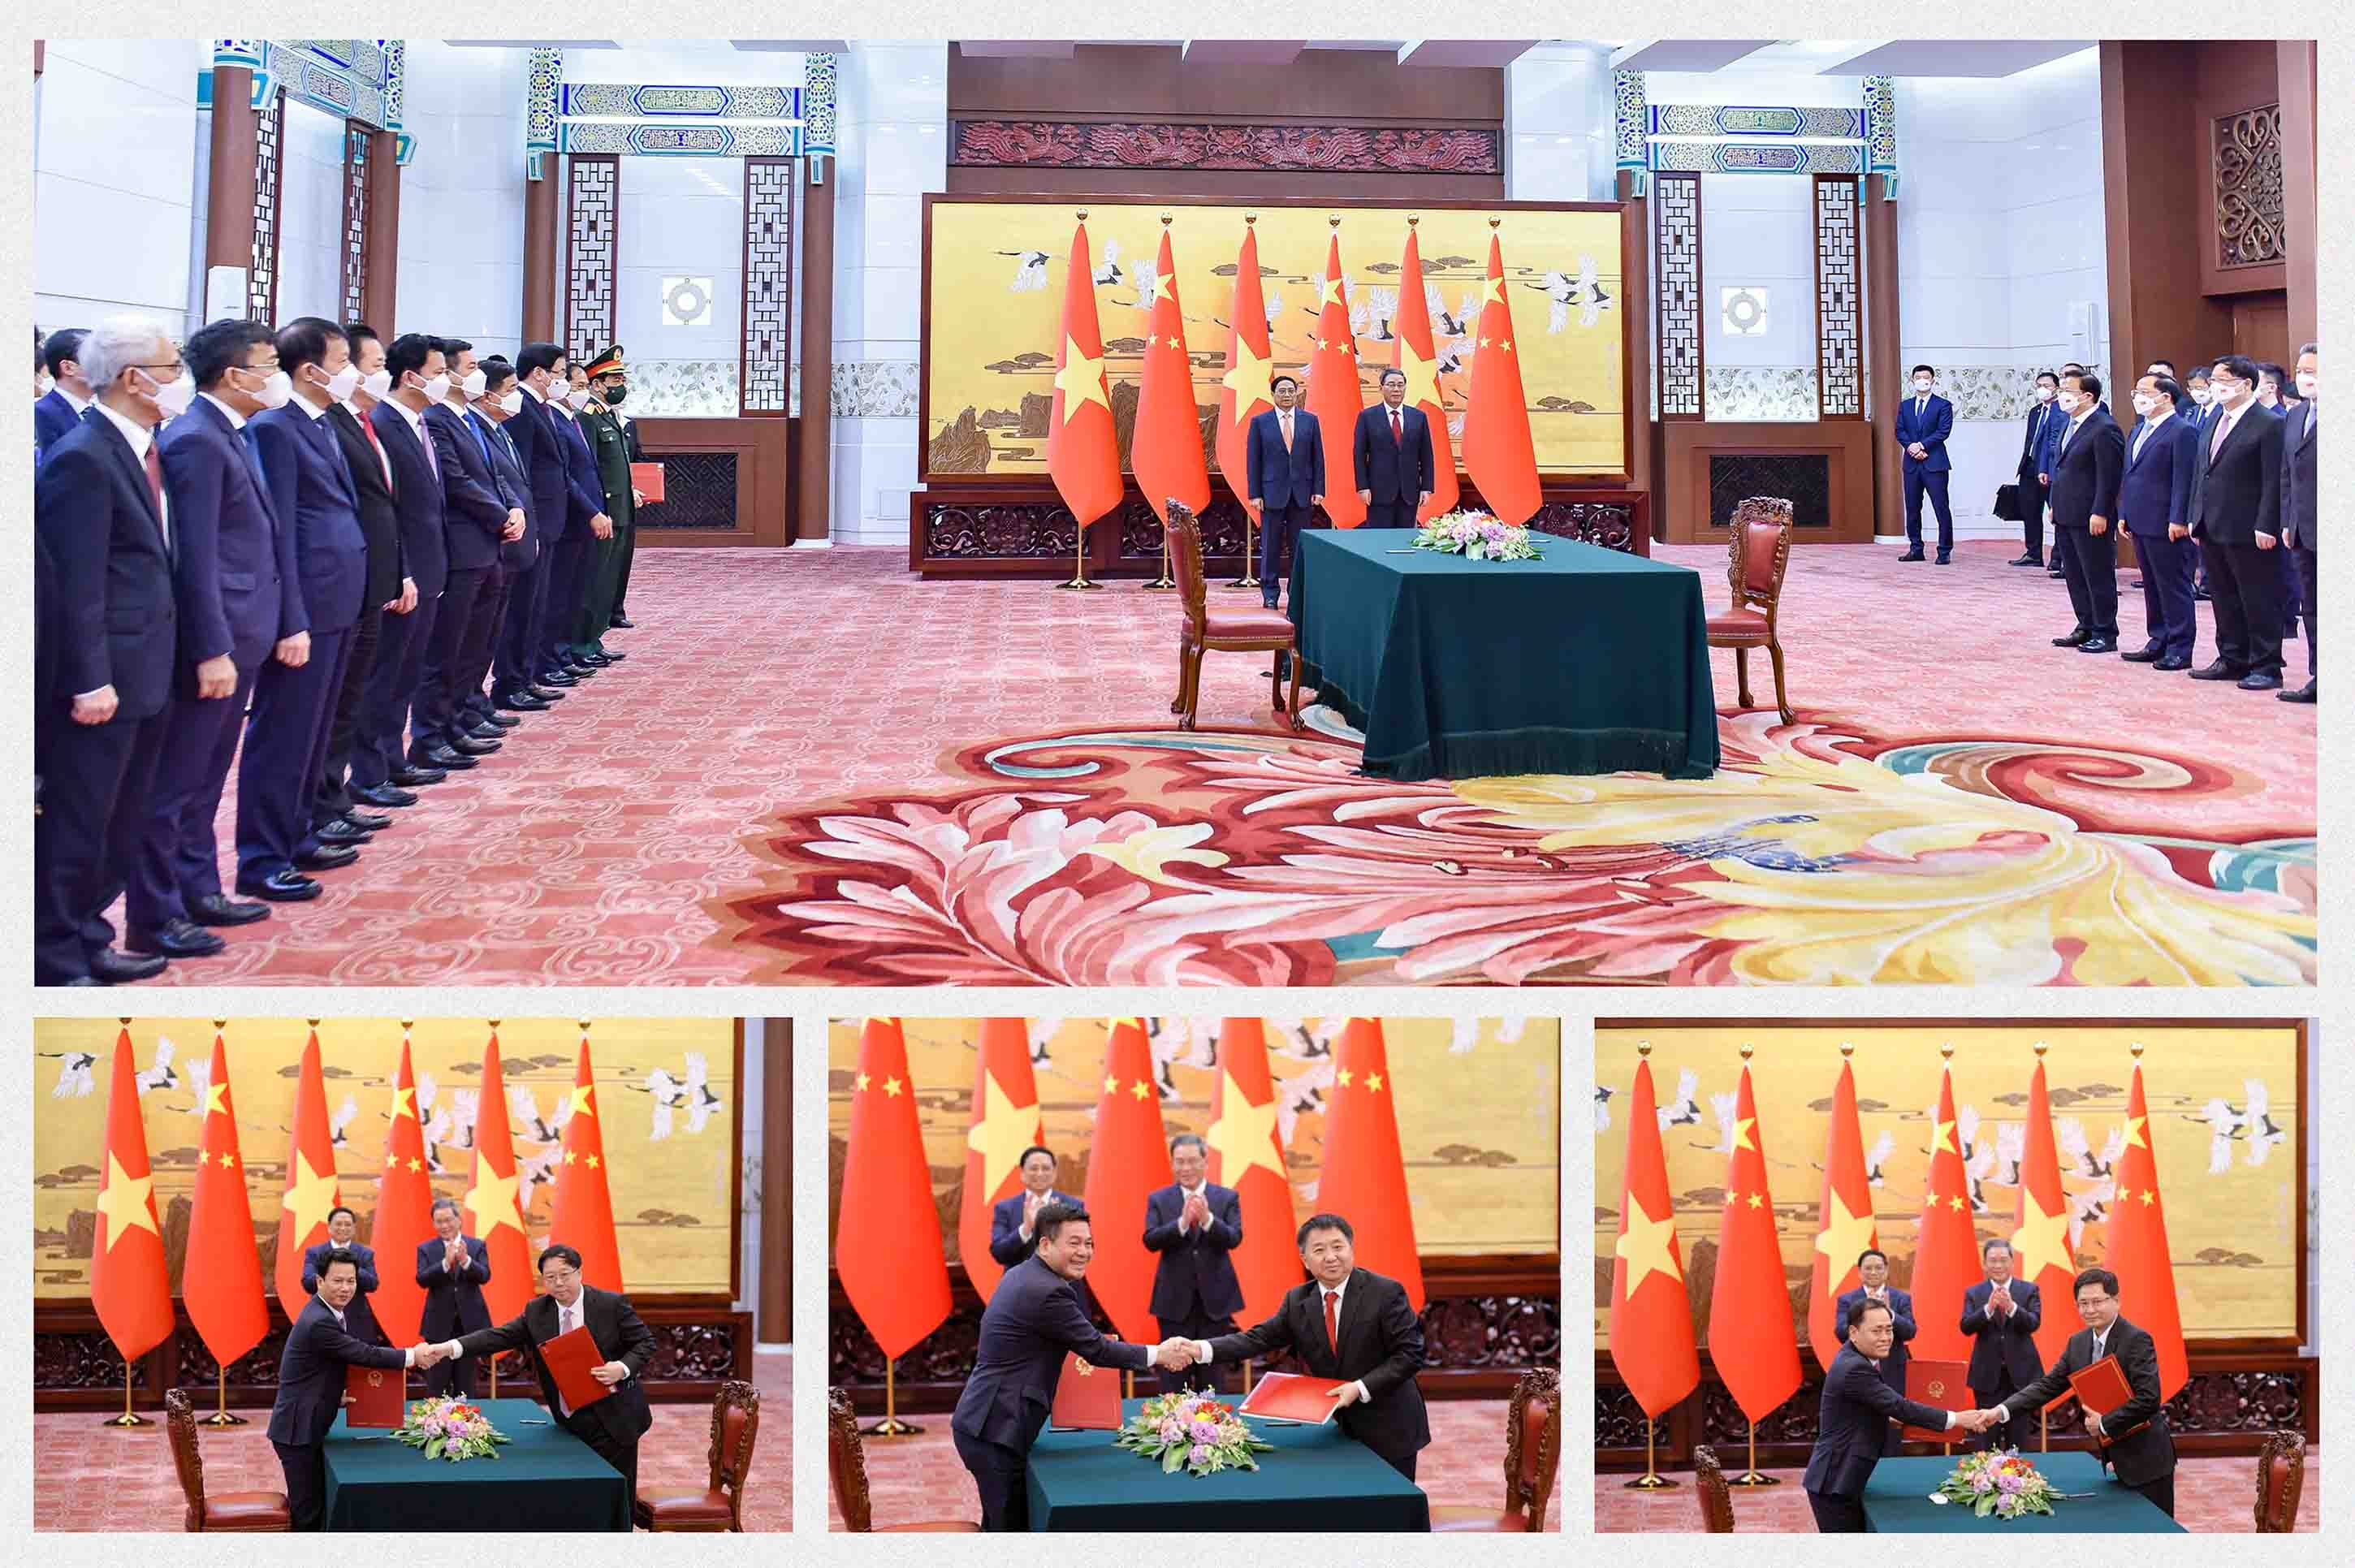 Thủ tướng Phạm Minh Chính thăm Trung Quốc và dự Hội nghị WEF:  Chuyến đi “2 trong 1” mang nhiều thông điệp